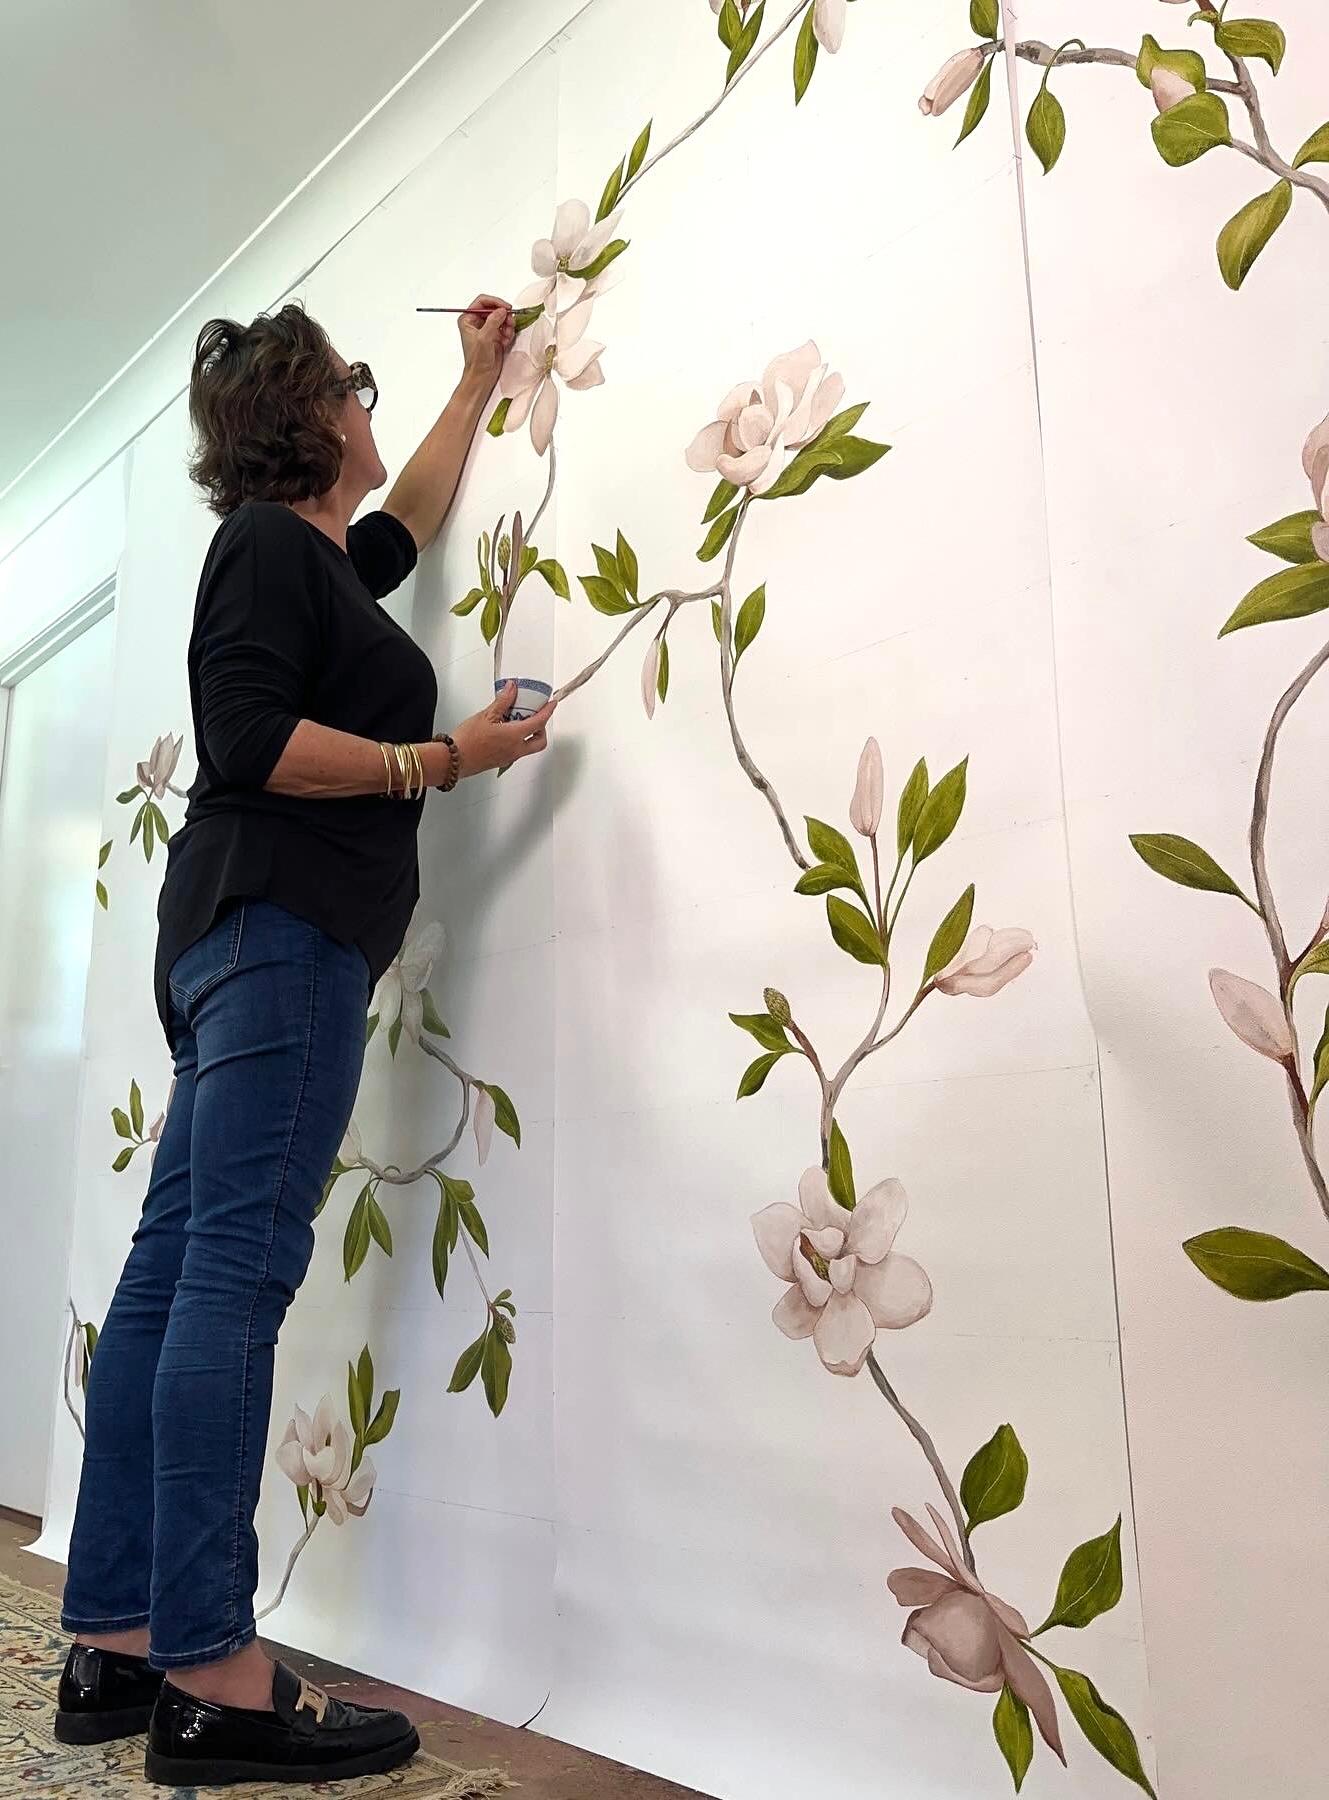 Le motif Magnolia est le premier de la collection de papiers peints peints à la main et est représentatif de ses fleurs fragiles et de ses tiges ligneuses.
Chaque panneau est une œuvre d'art, peinte avec un soin et une expertise méticuleux par